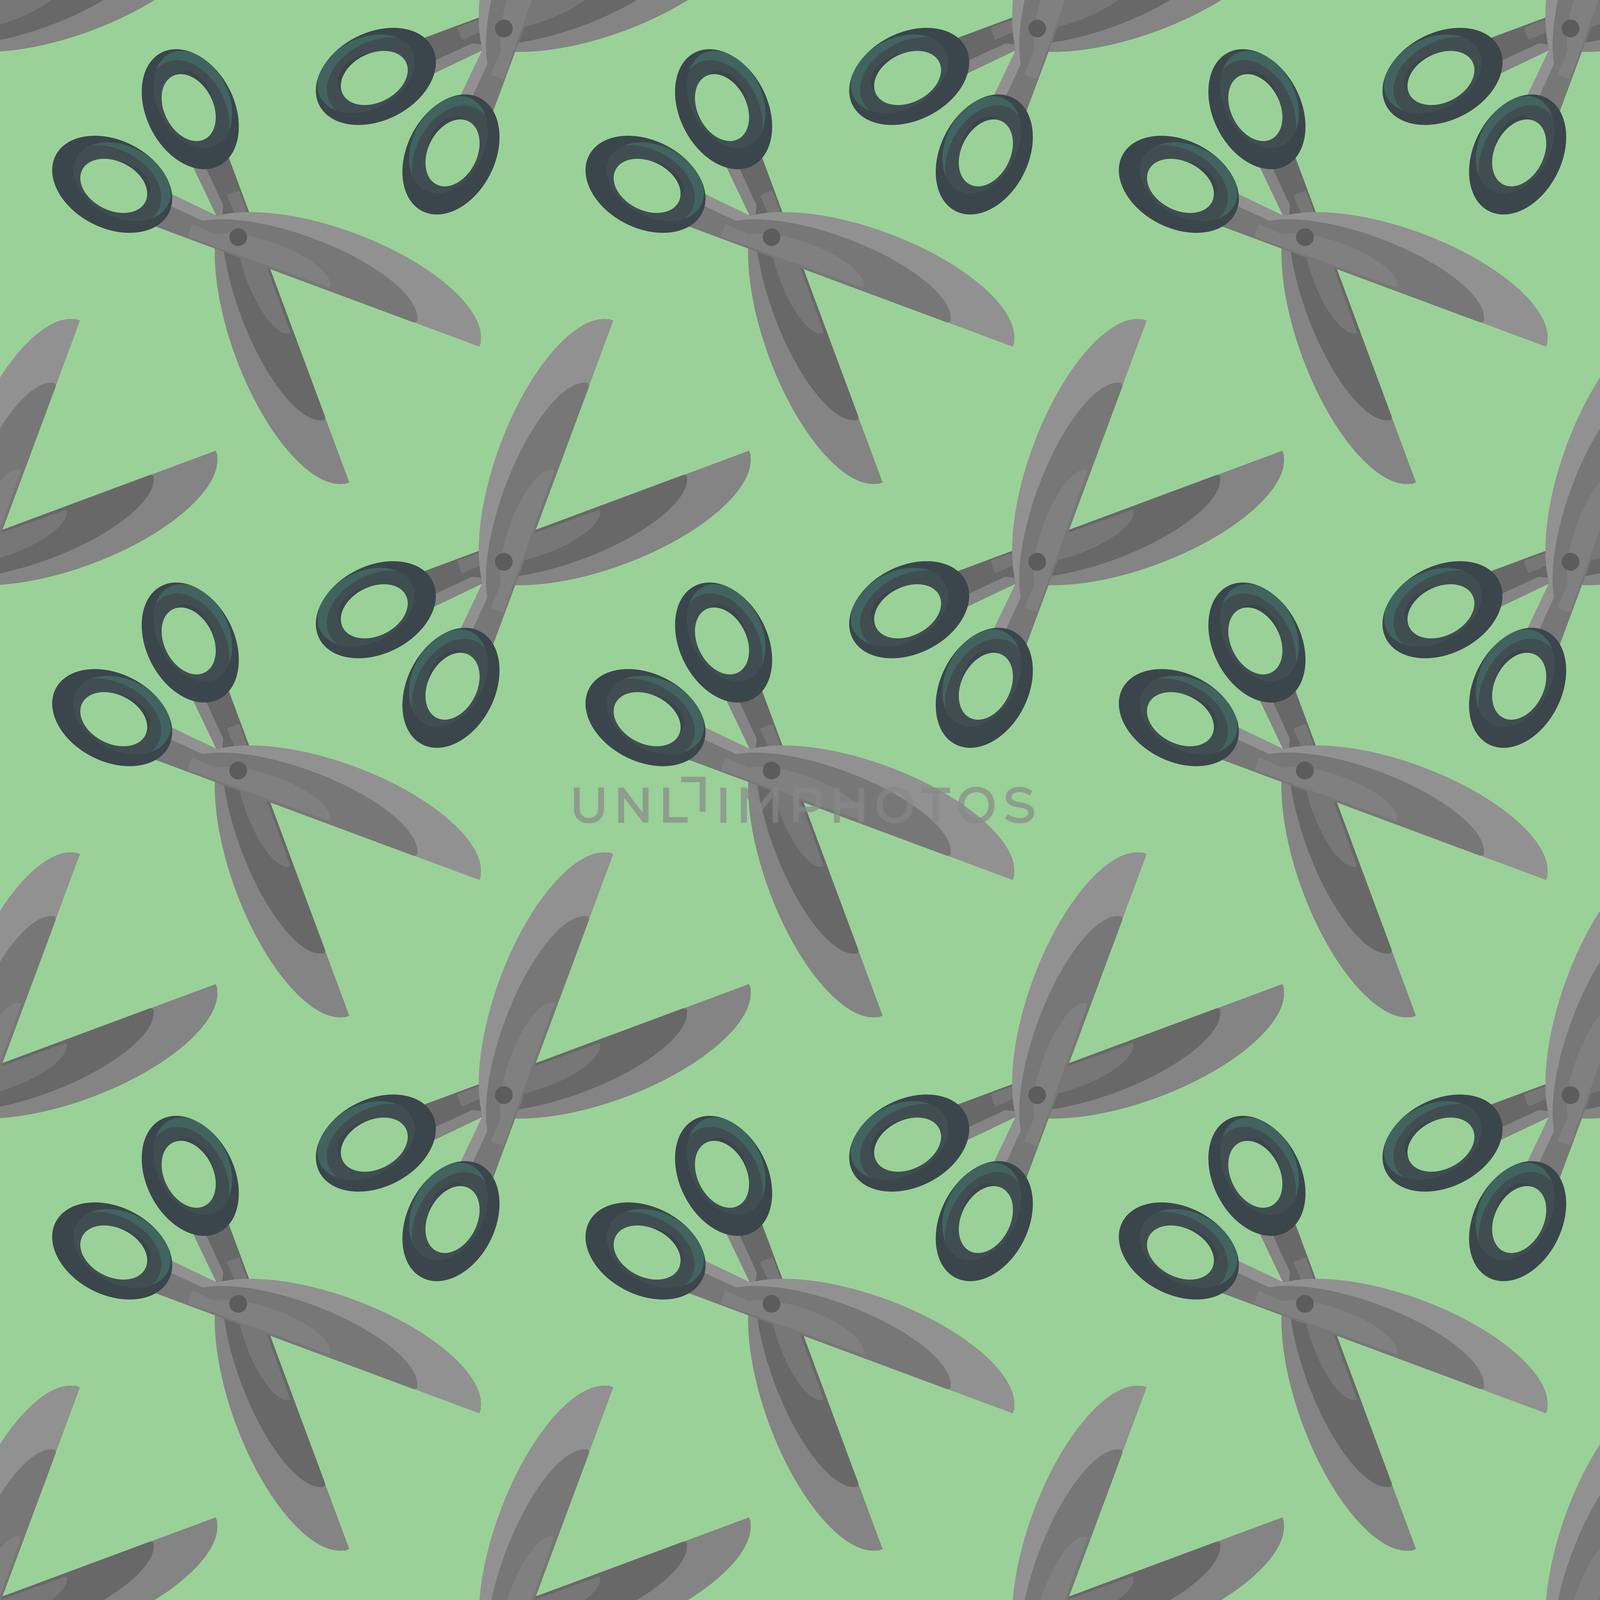 Scissors pattern , illustration, vector on white background